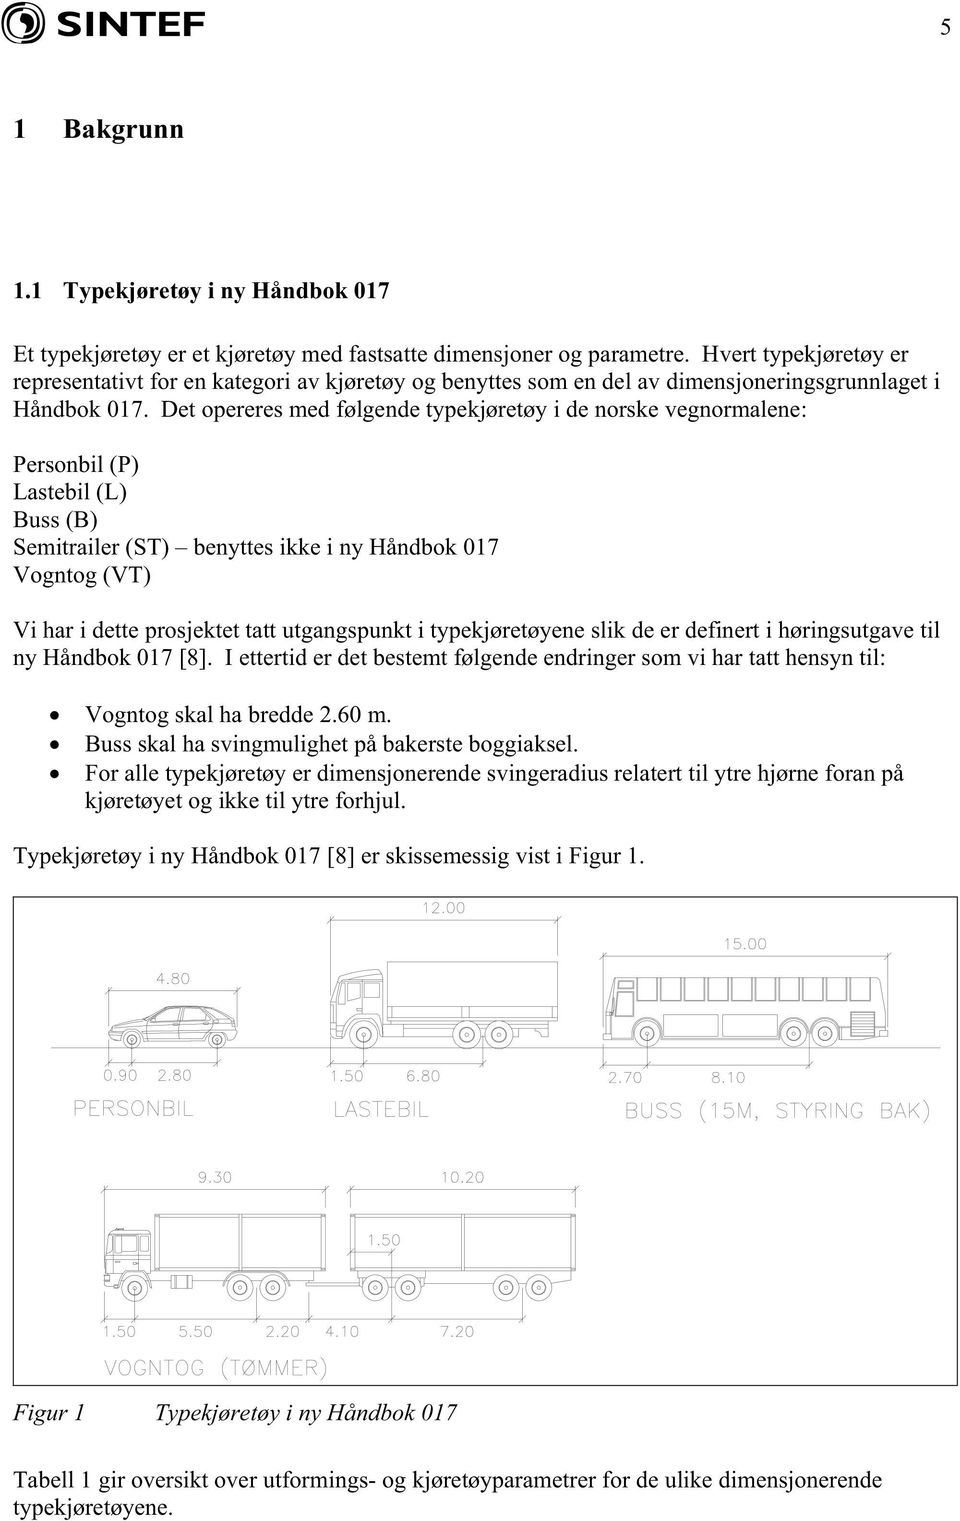 Det opereres med følgende typekjøretøy i de norske vegnormalene: Personbil (P) Lastebil (L) Buss (B) Semitrailer (ST) benyttes ikke i ny Håndbok 017 Vogntog (VT) Vi har i dette prosjektet tatt